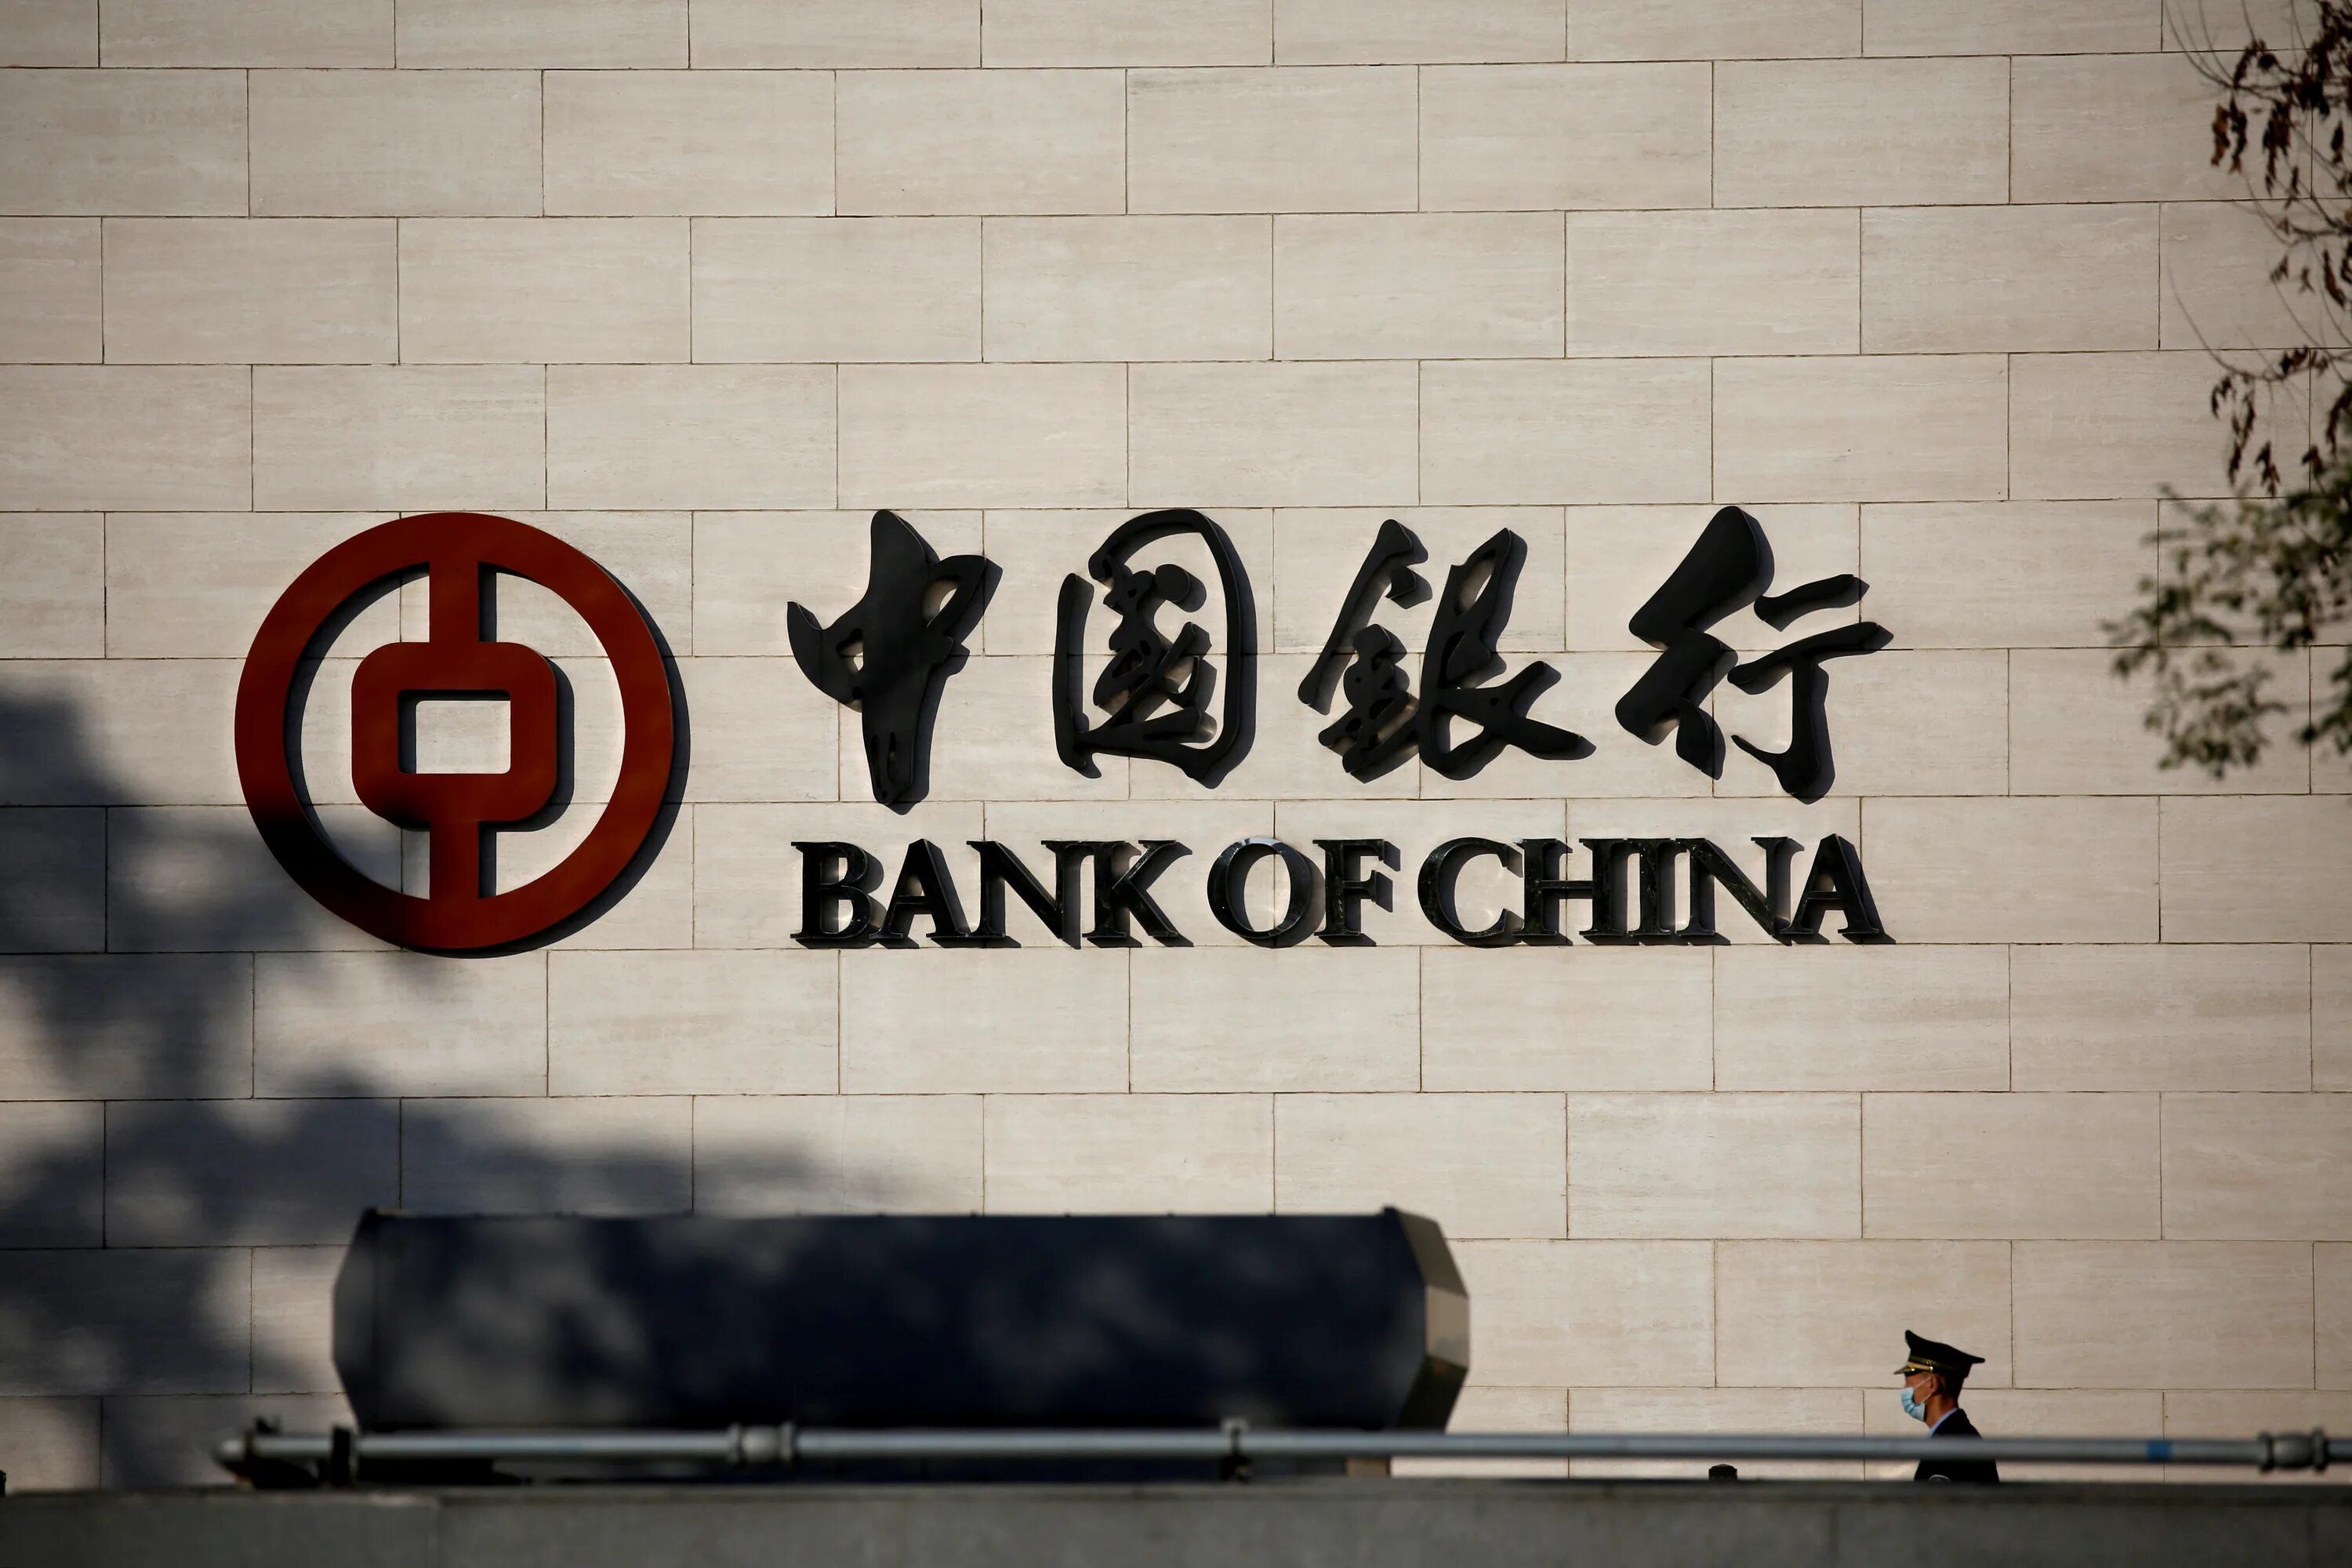 Банк Китая (boc). Bank of China в России. Банк Китая Пекин. Китайские банки в России. Bank of china russia